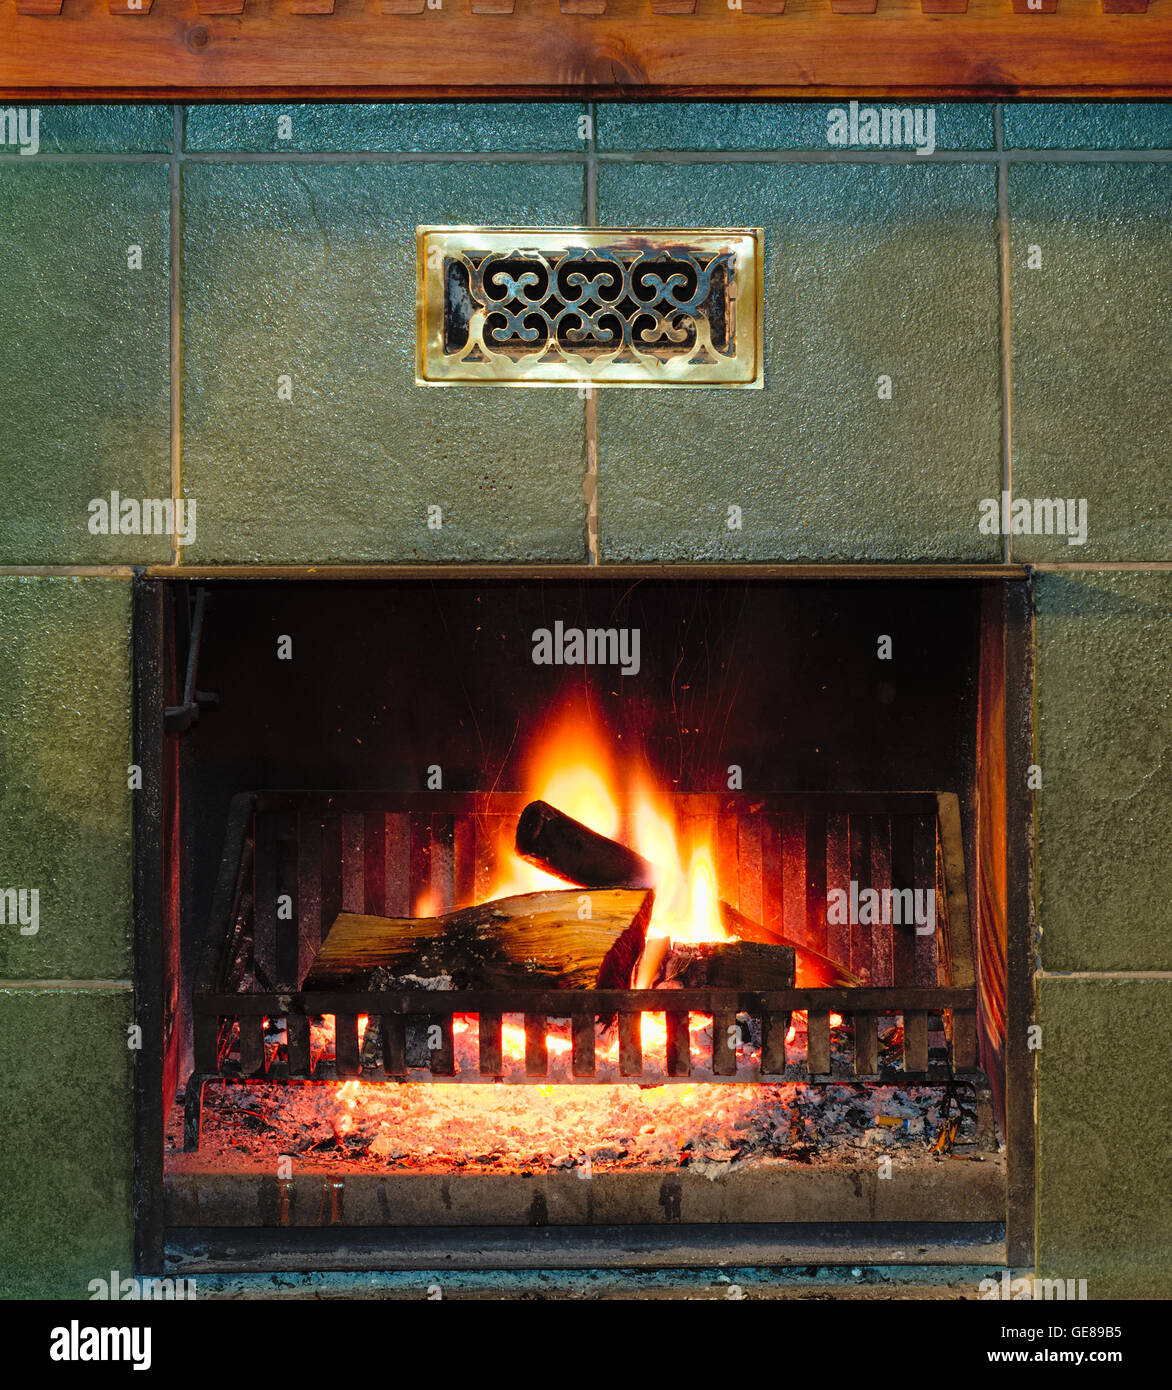 Le feu et la combustion de bois de cheminée ancienne. Concept de confort et un endroit chaud pour hiver froid Banque D'Images